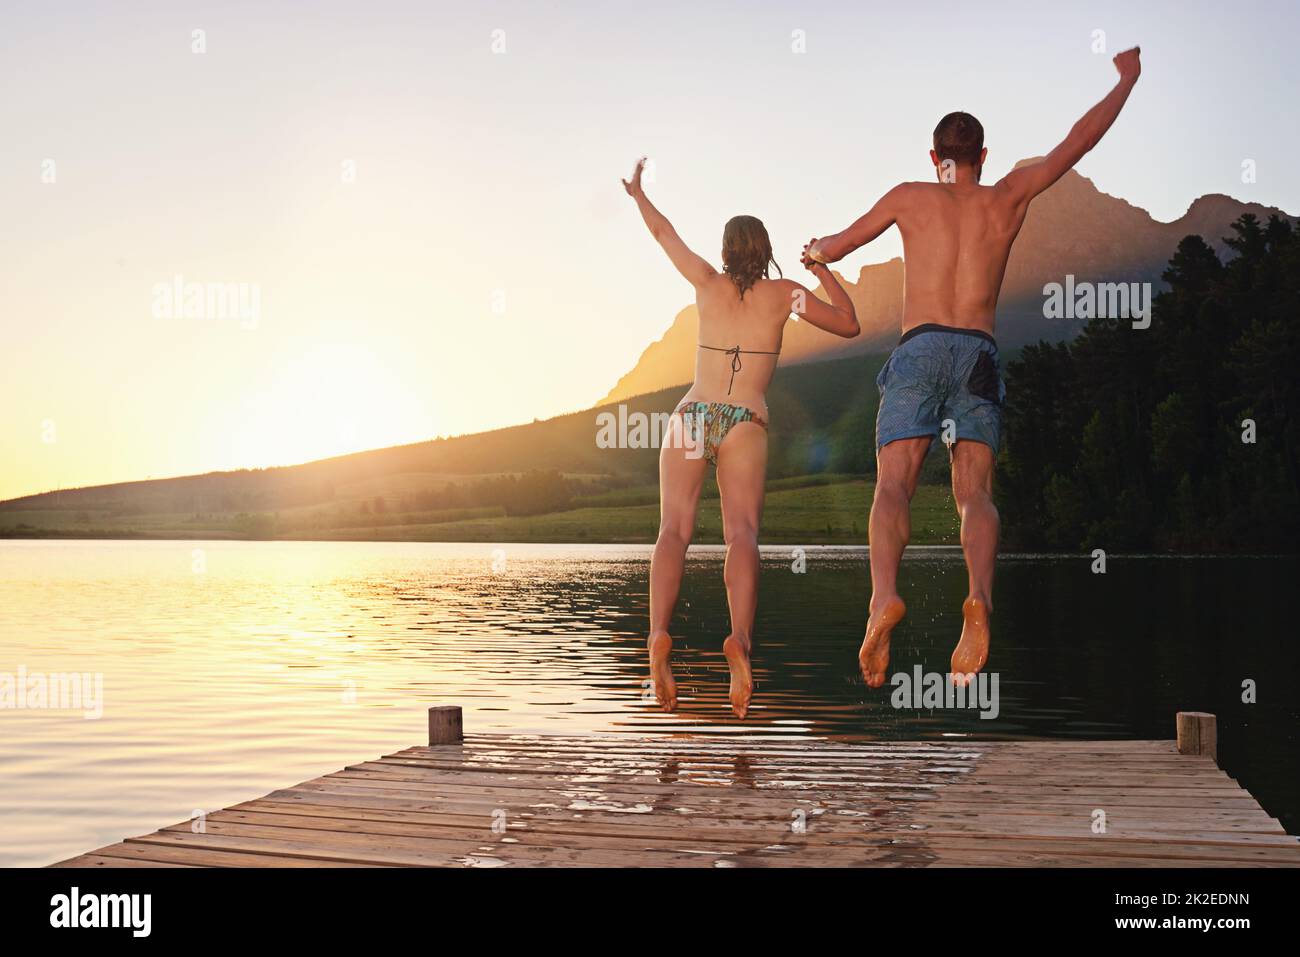 Auf dem Sprung. Rückansicht eines jungen Paares in Badeanzügen, das bei Sonnenuntergang von einem Dock springt. Stockfoto